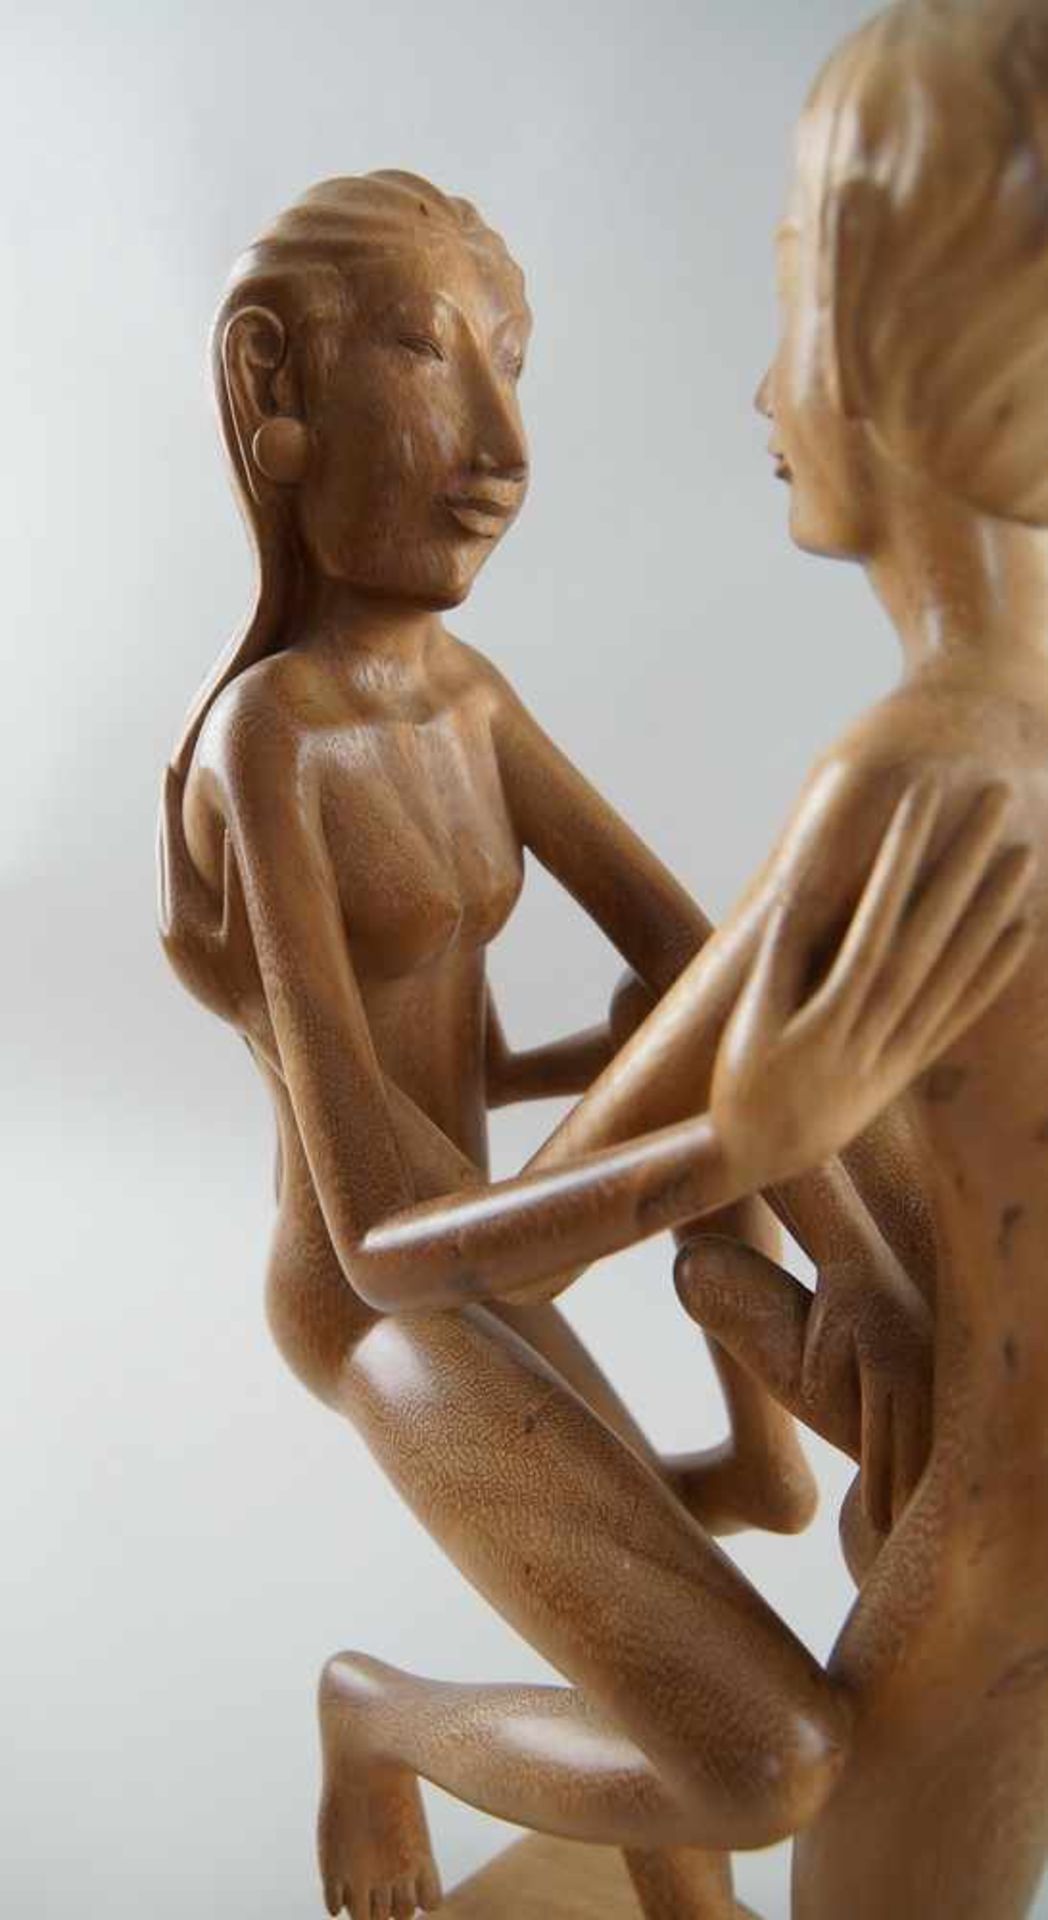 Paar / Erotische Akt Skulptur, Holz geschnitzt, in erotischer Pose, H 53 cm - Bild 6 aus 6